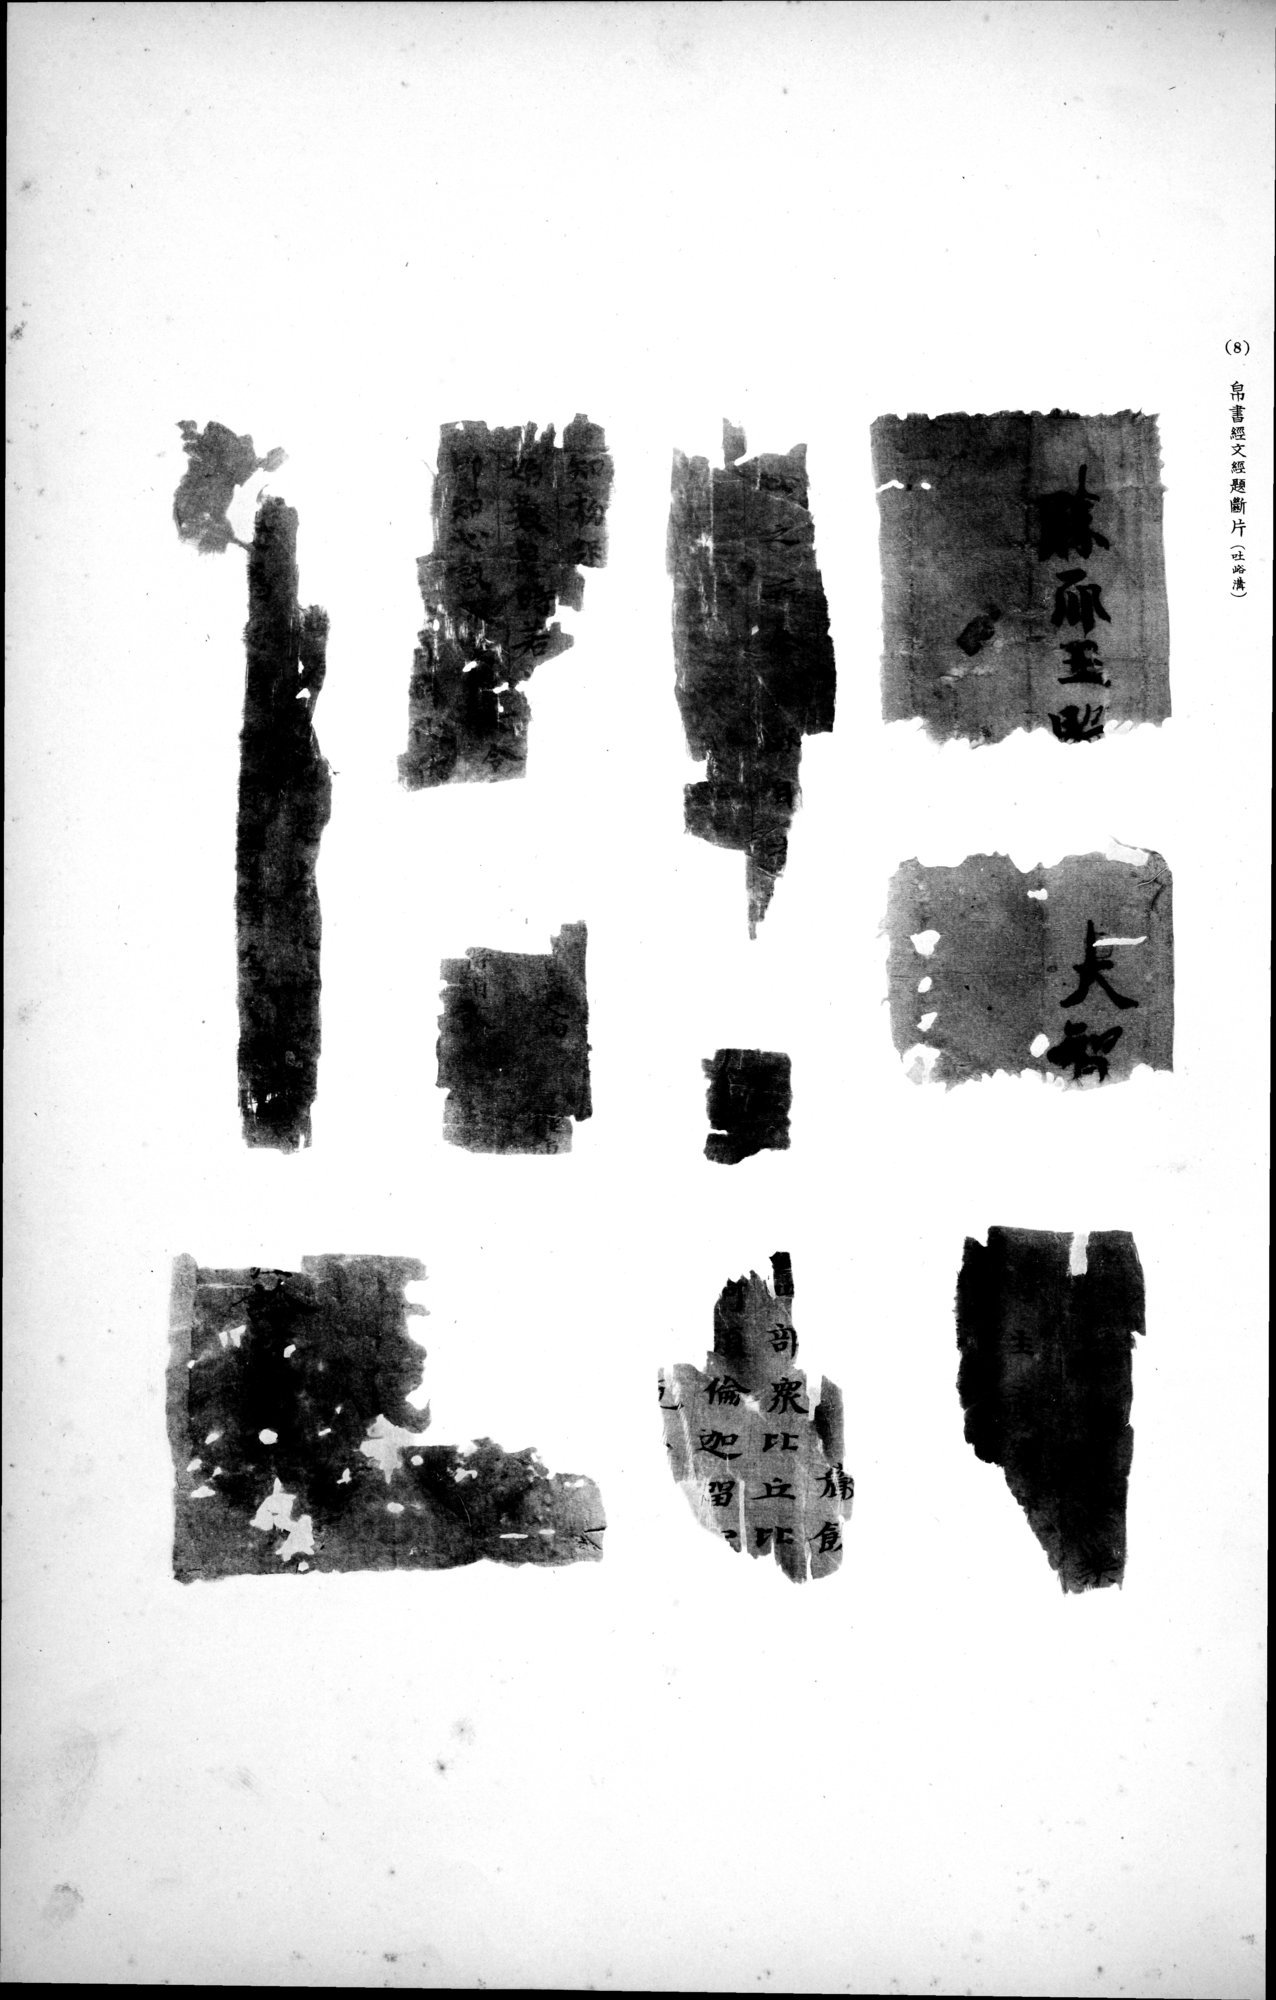 西域考古図譜 : vol.2 / Page 169 (Grayscale High Resolution Image)